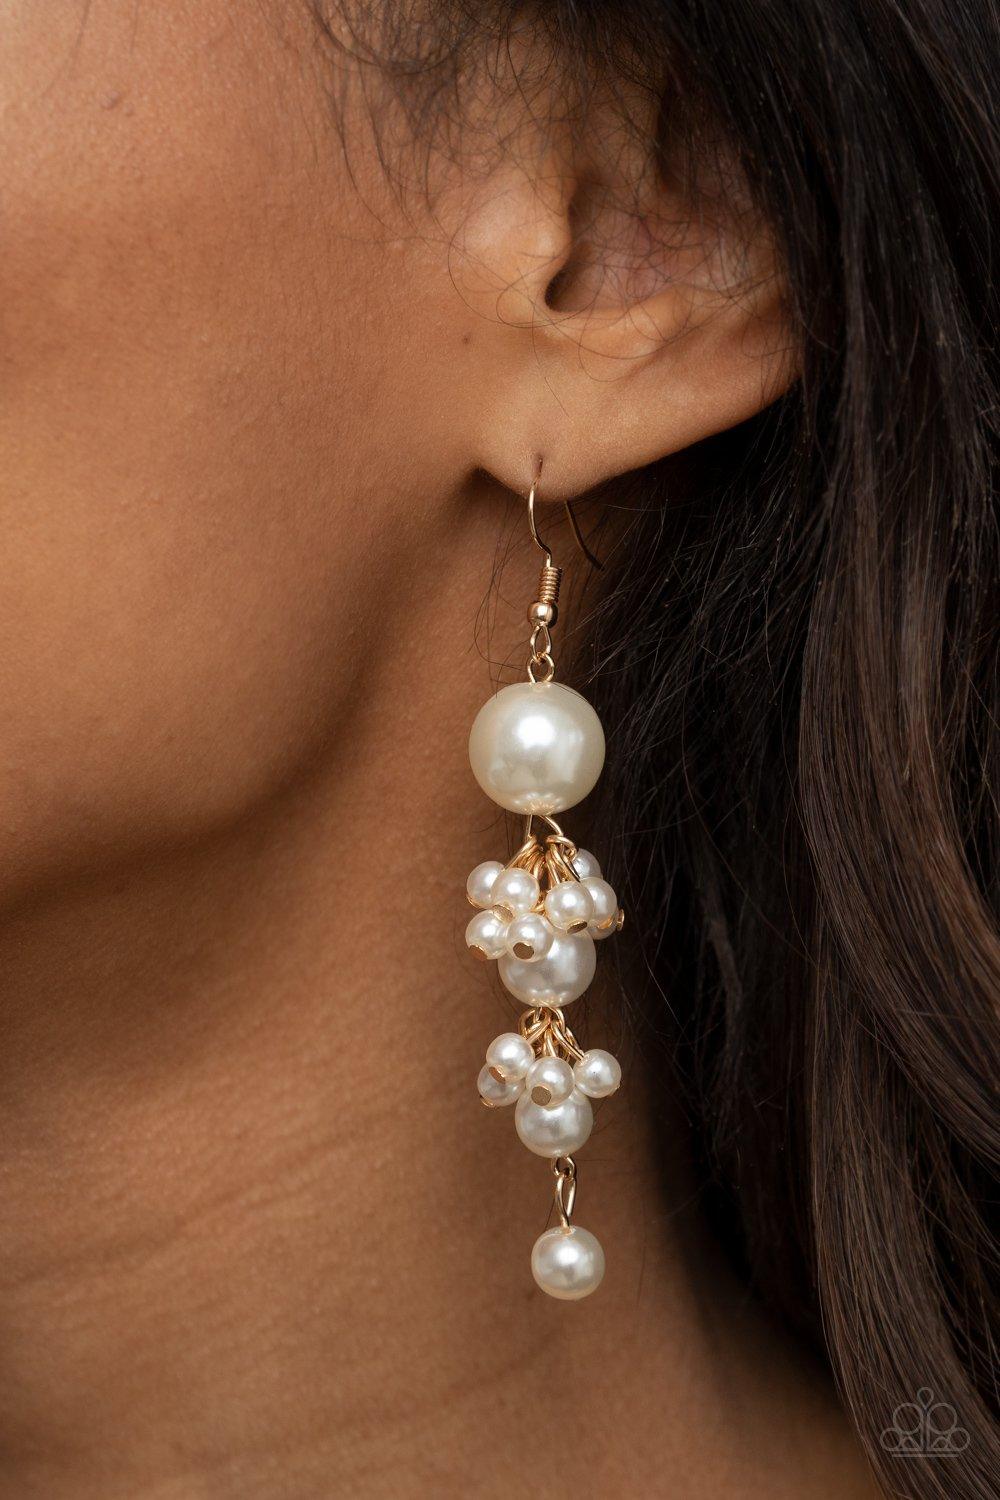  Ageless Applique Gold Earrings - Jewelry by Bretta